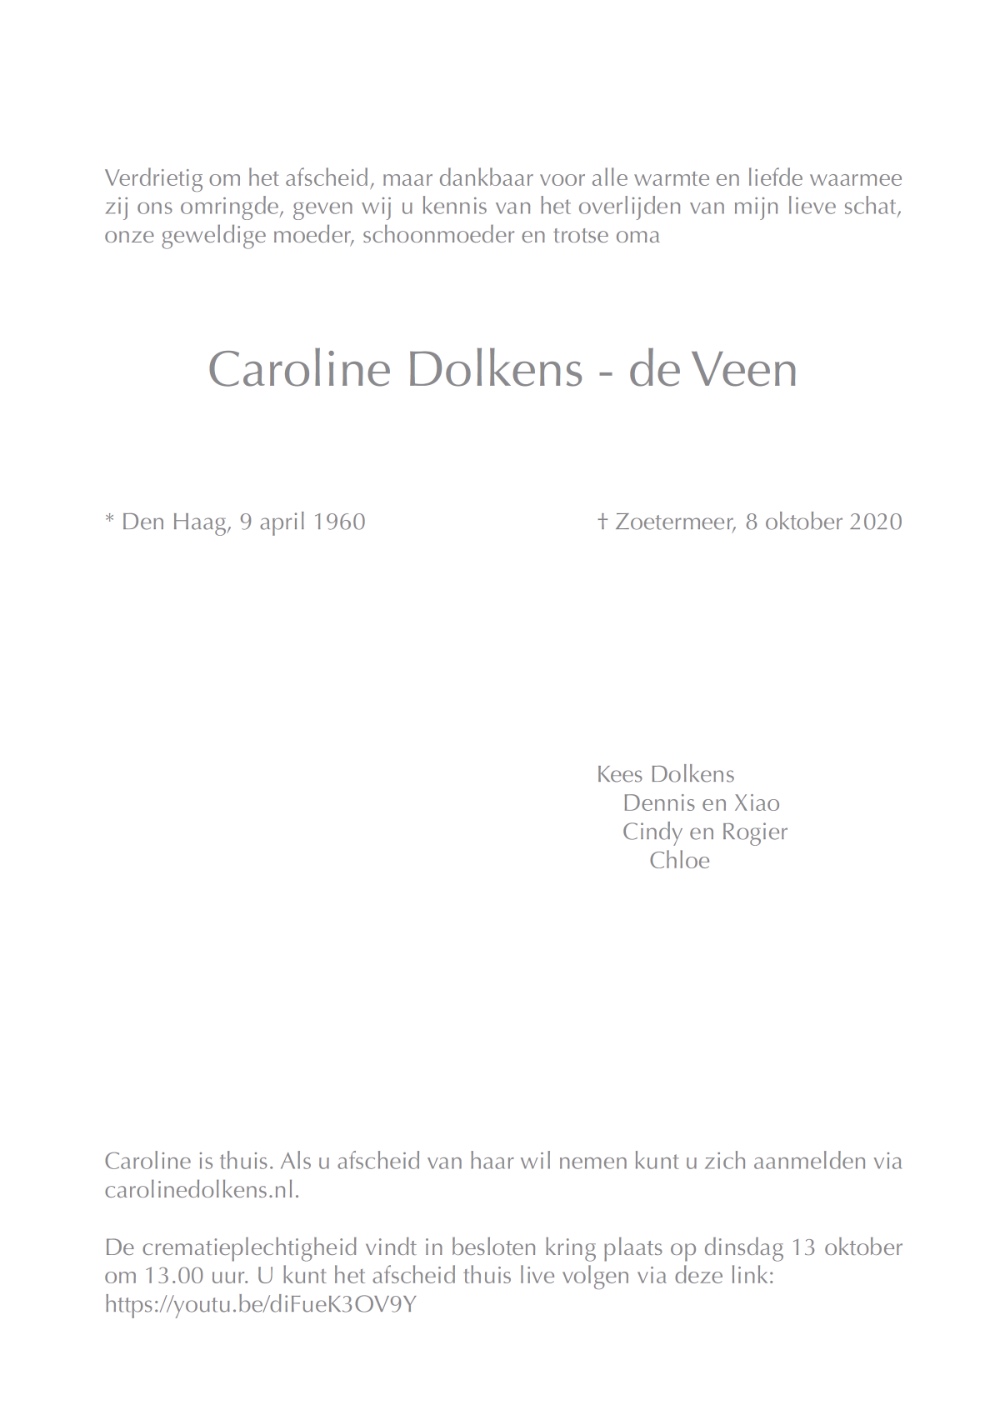 Caroline Dolkens - de Veen, rouwkaart binnenkant rechts